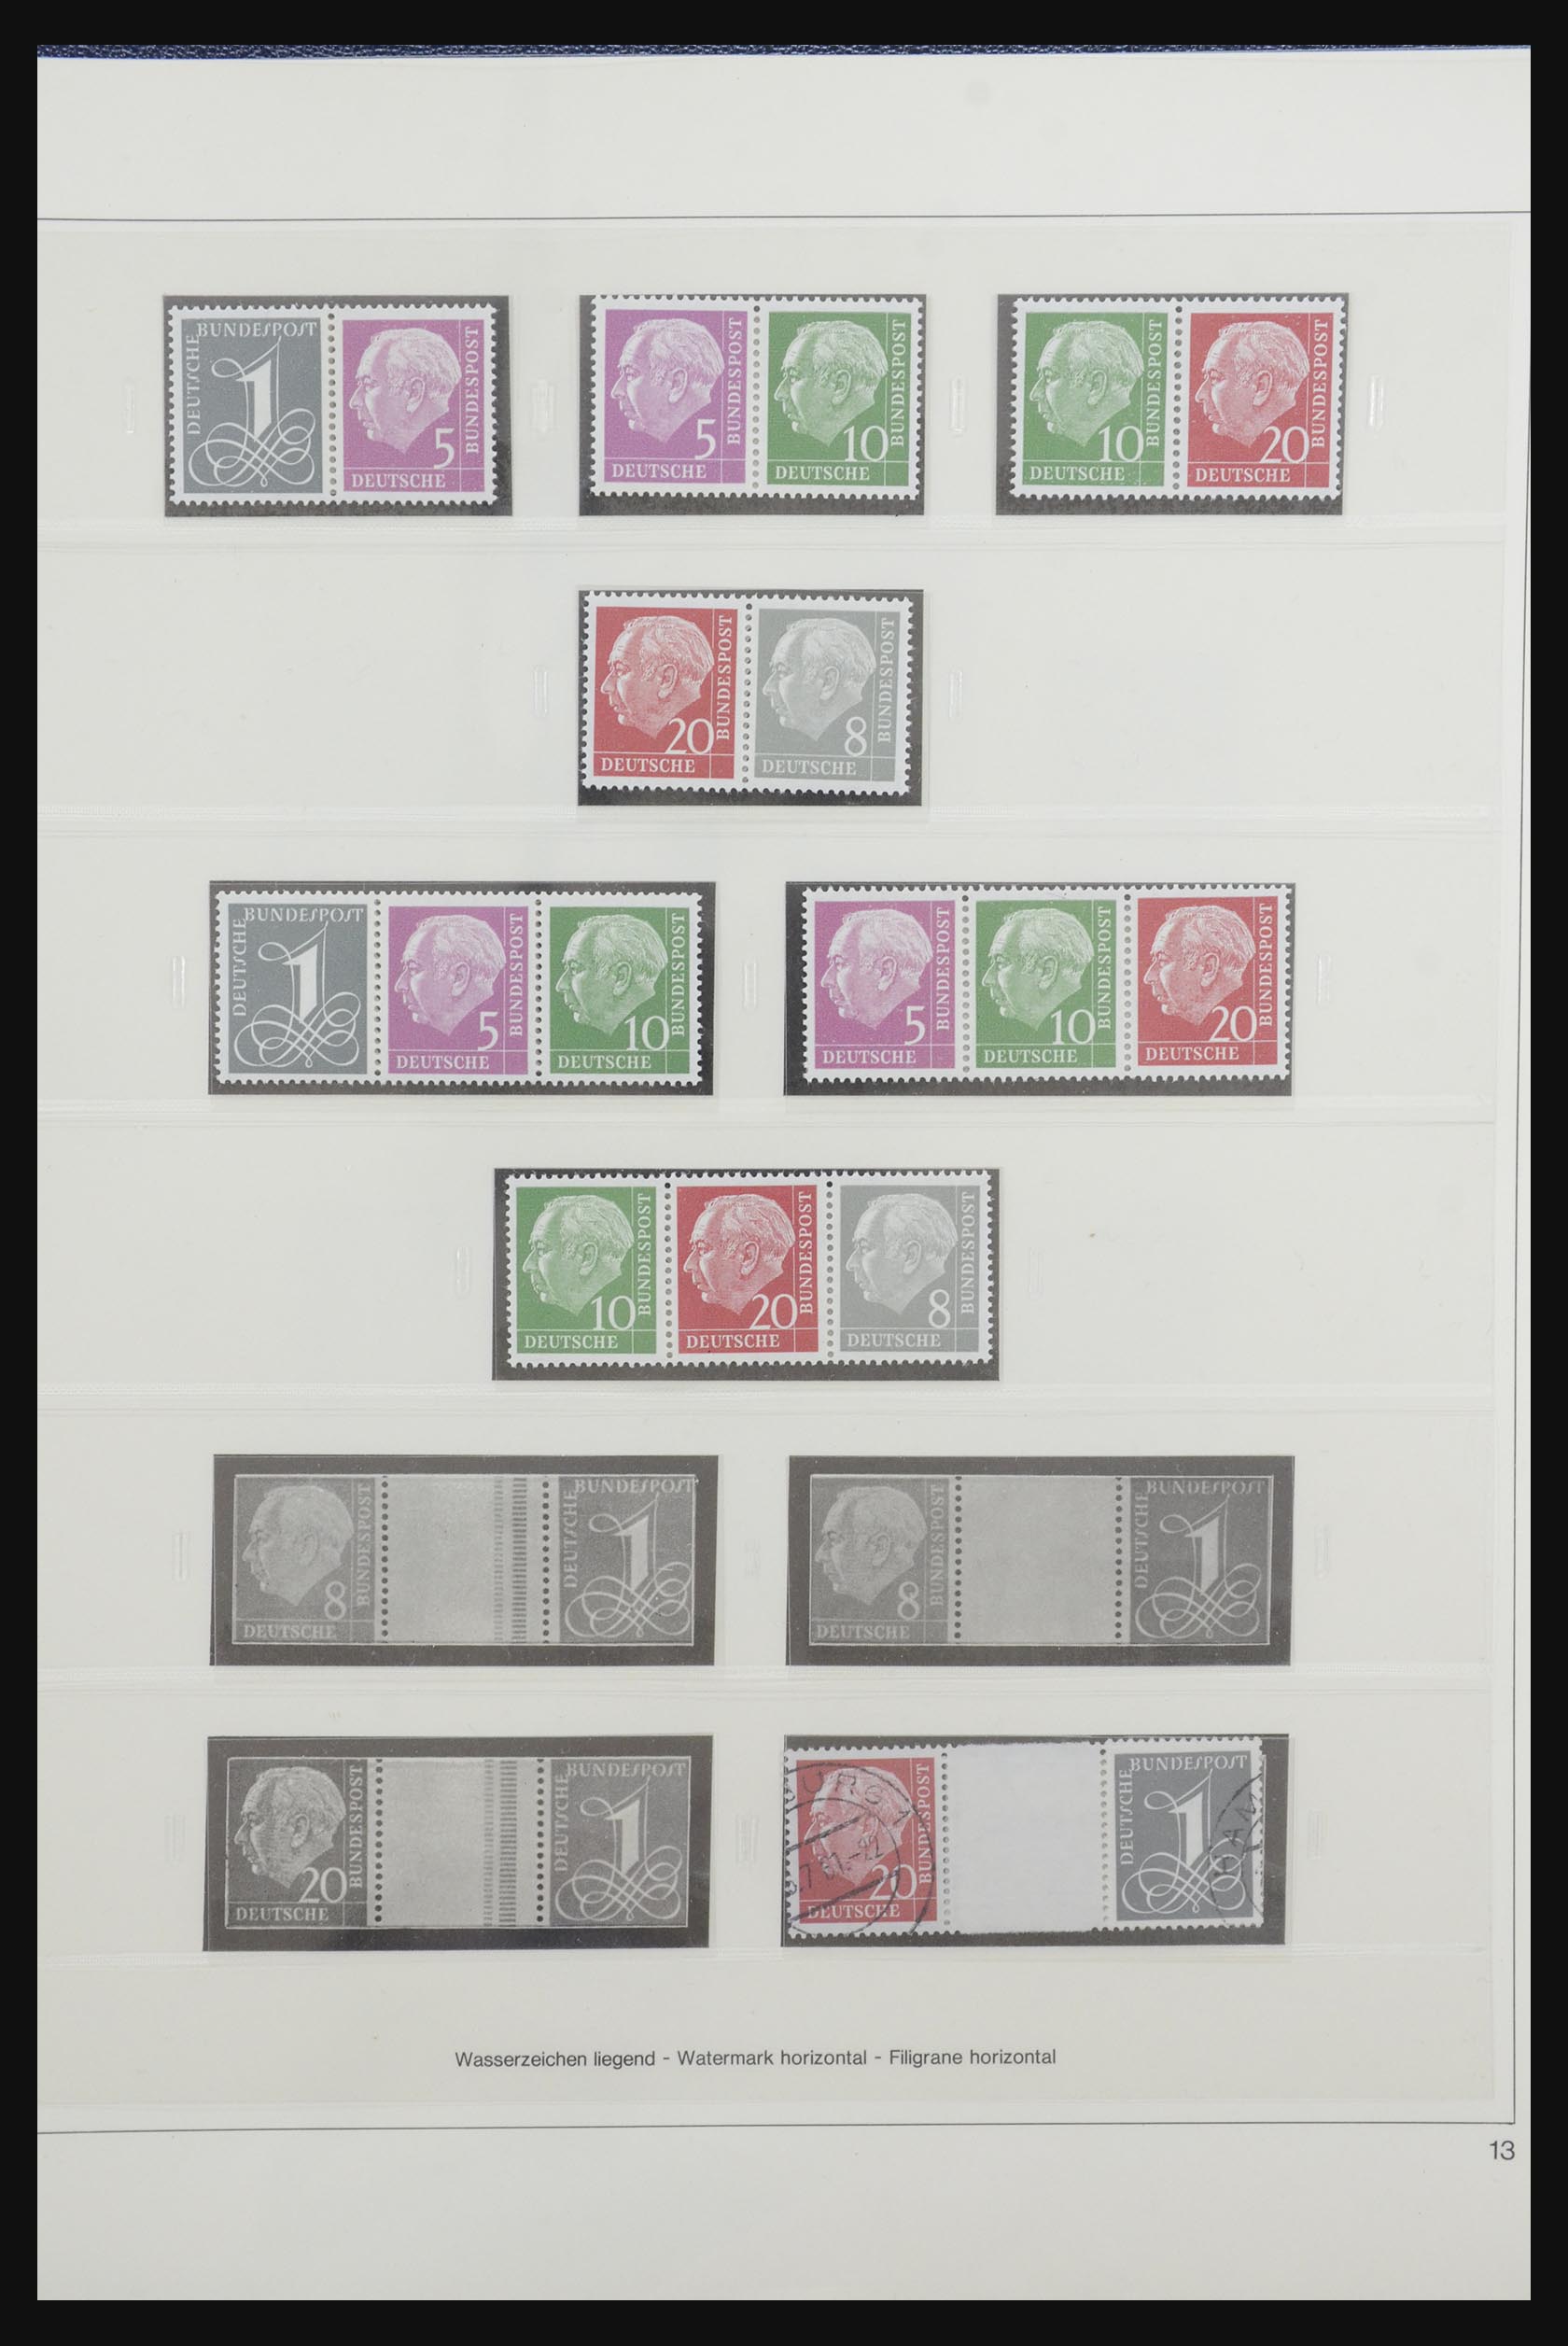 31842 015 - 31842 Bundespost combinations 1951-2003.